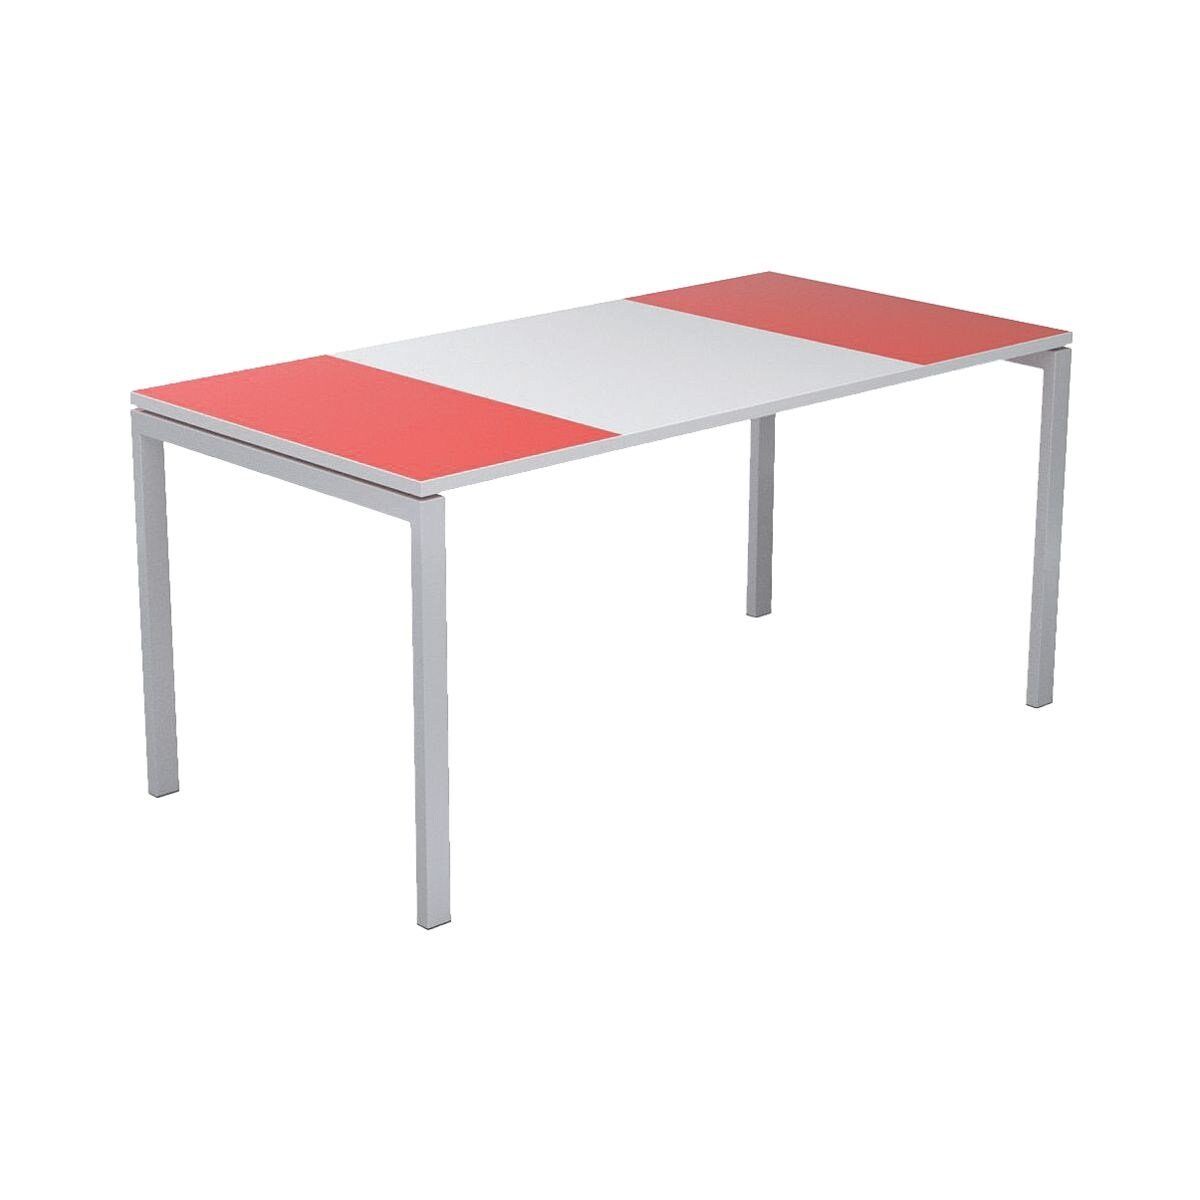 EASYOFFICE Schreibtisch easyOffice, mit farbigen Außenflächen und ABS-Kanten weiß/rot